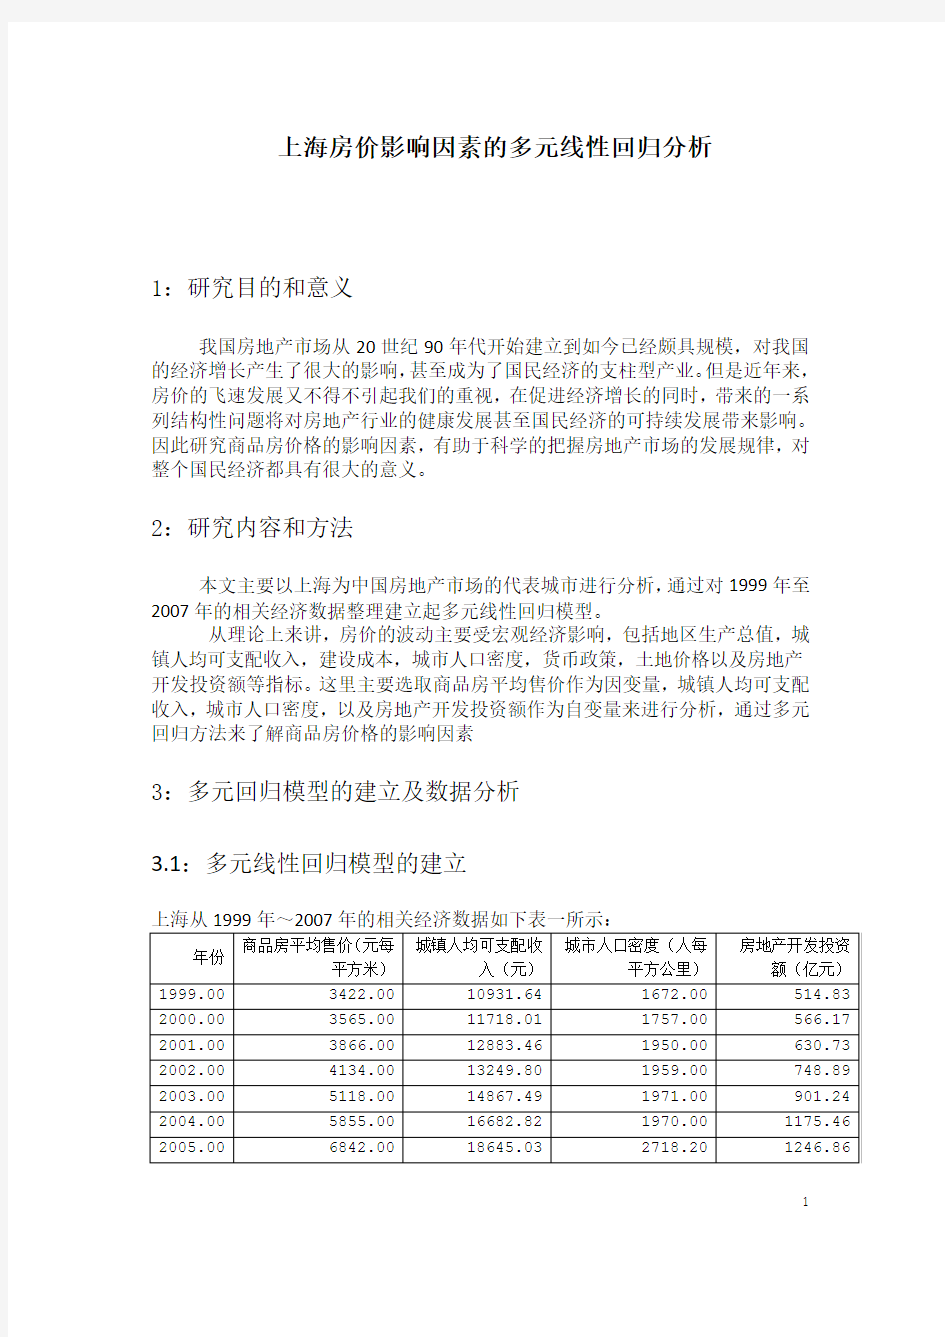 上海房价影响因素SPSS多元线性回归分析